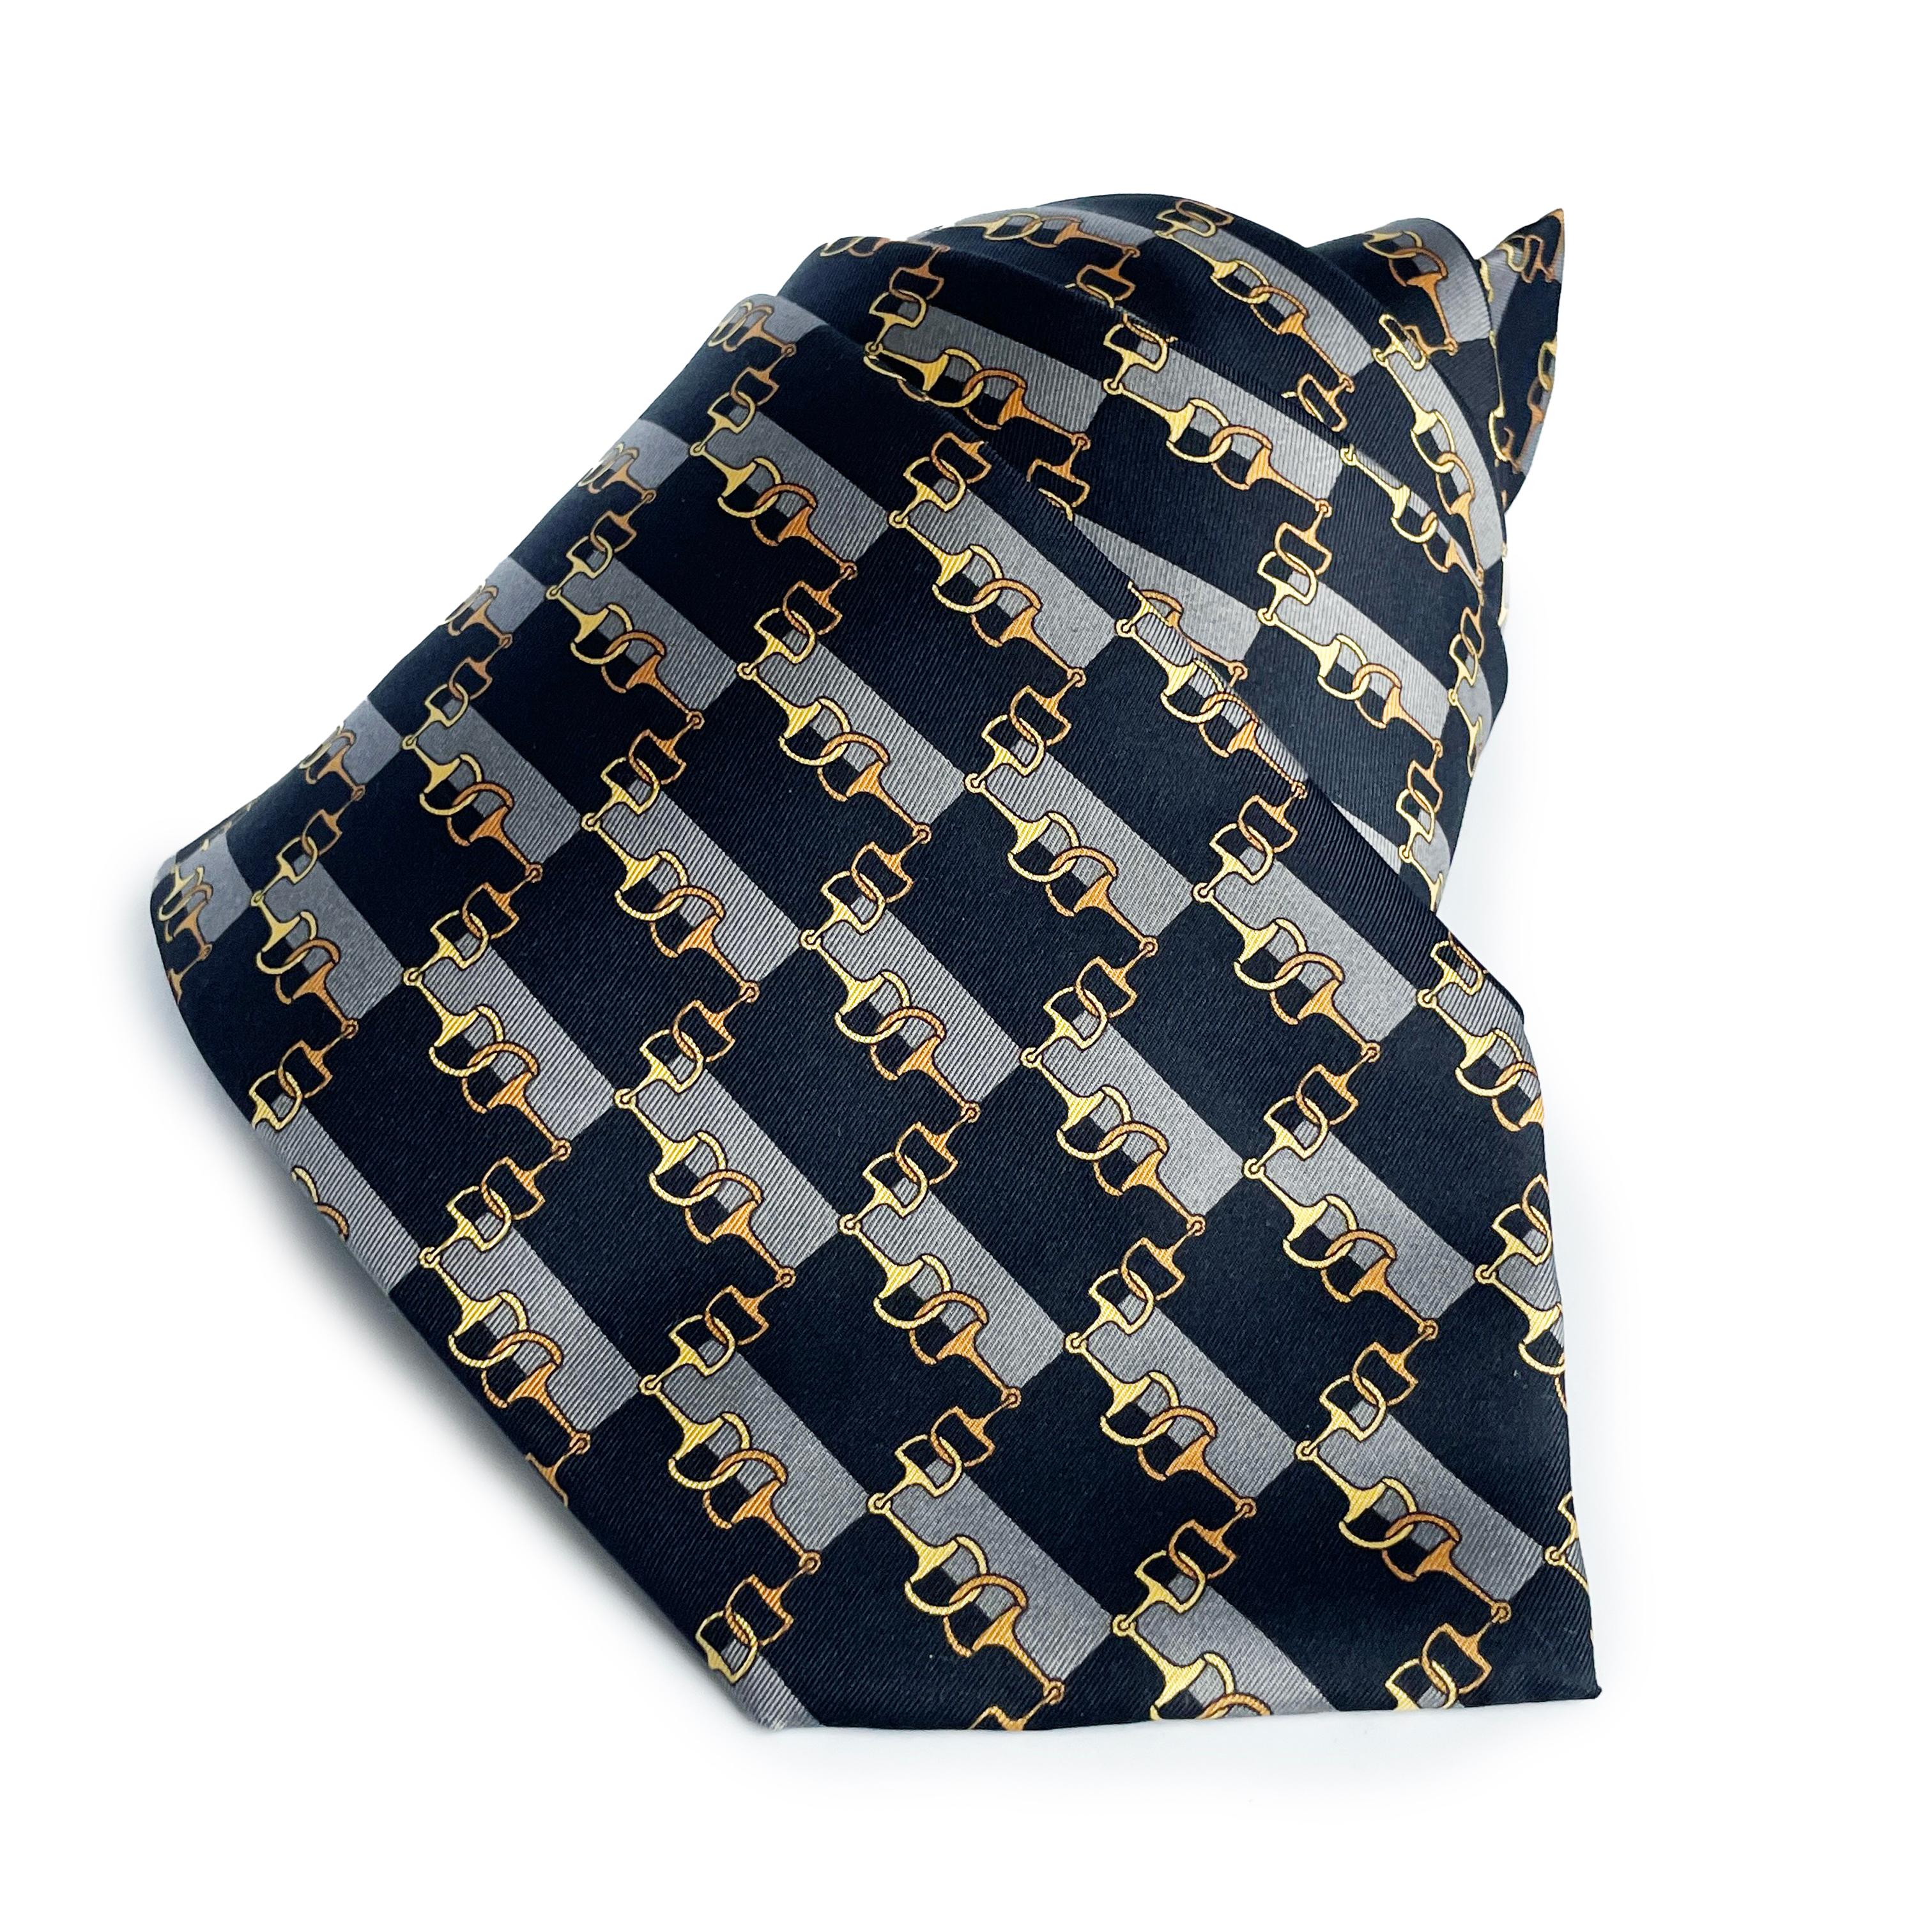 Cravate d'occasion pour homme de Fendi, probablement postérieure à 2000. Confectionnée en soie, elle est ornée d'un motif de mors de cheval équestre.

Parfait pour ceux d'entre vous qui apprécient les accessoires de luxe pour le travail ou les